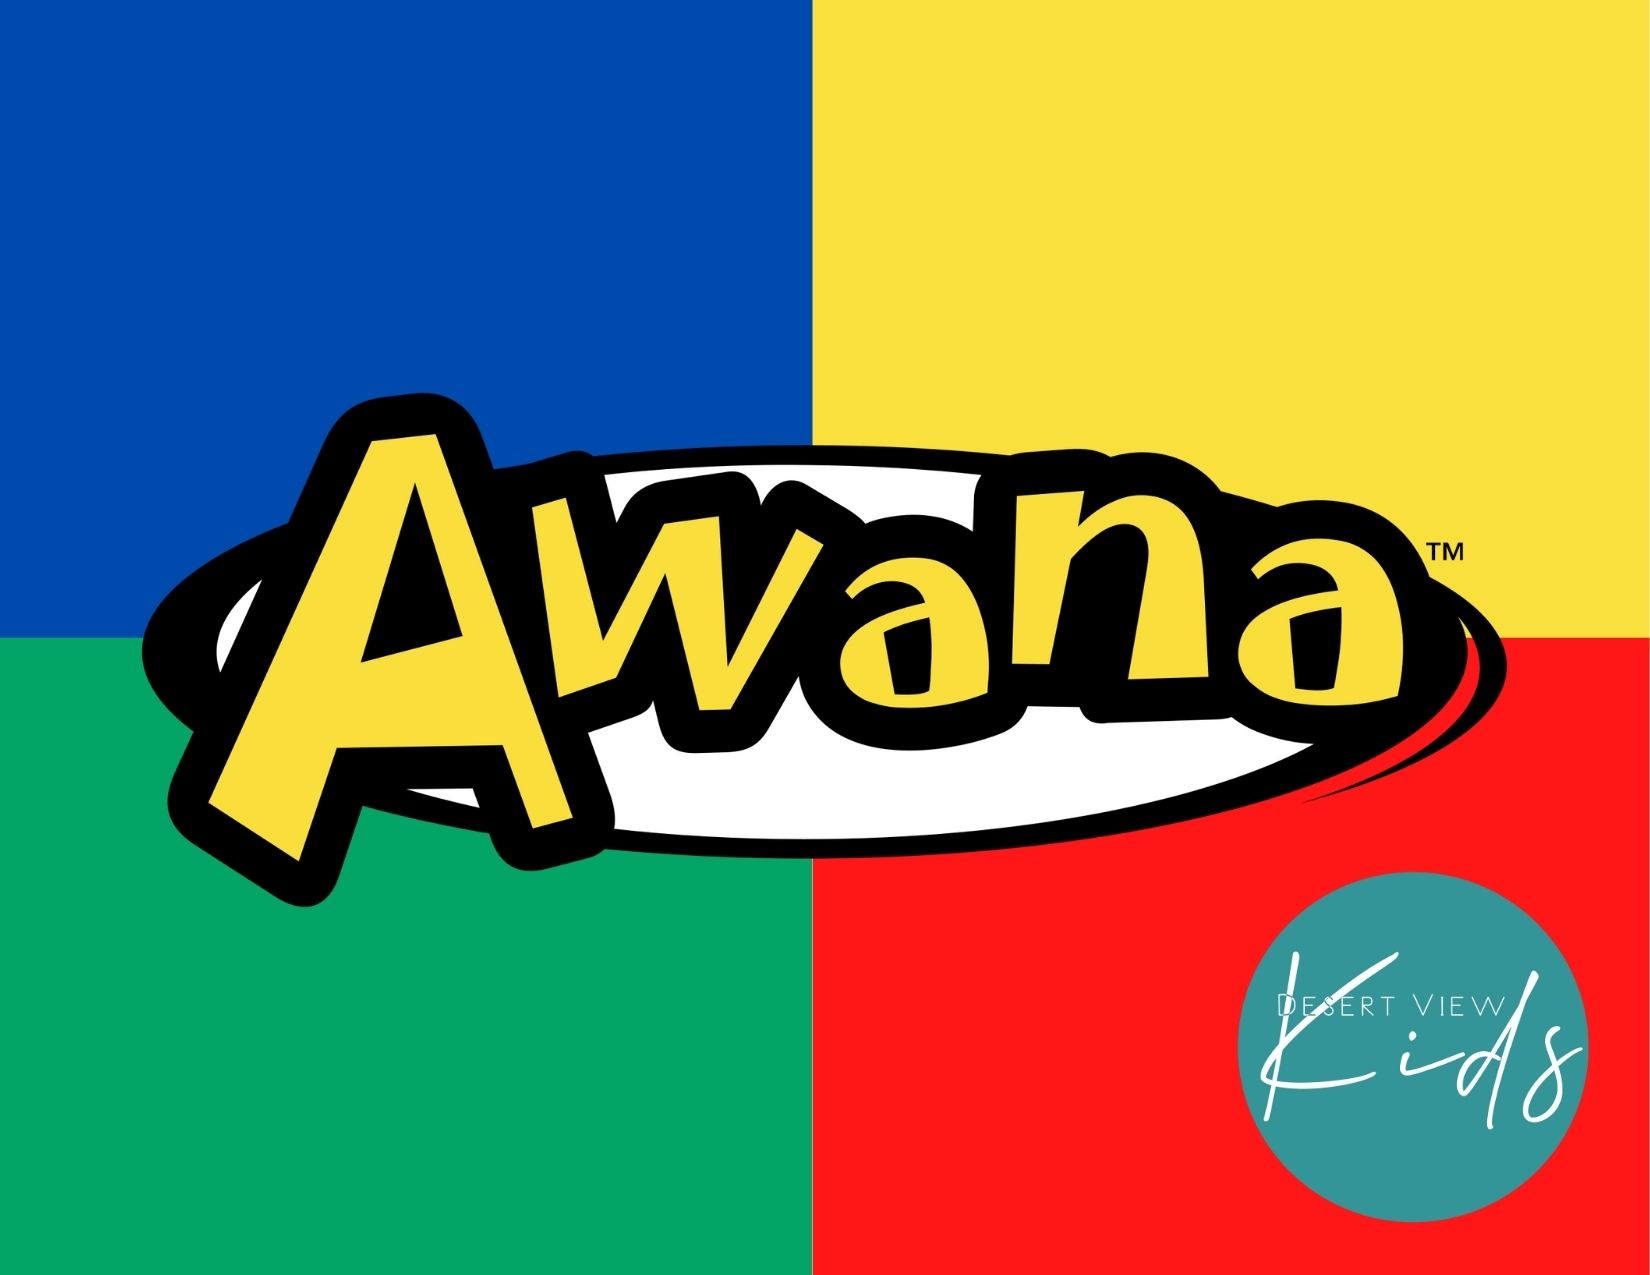 Awana logo for registration